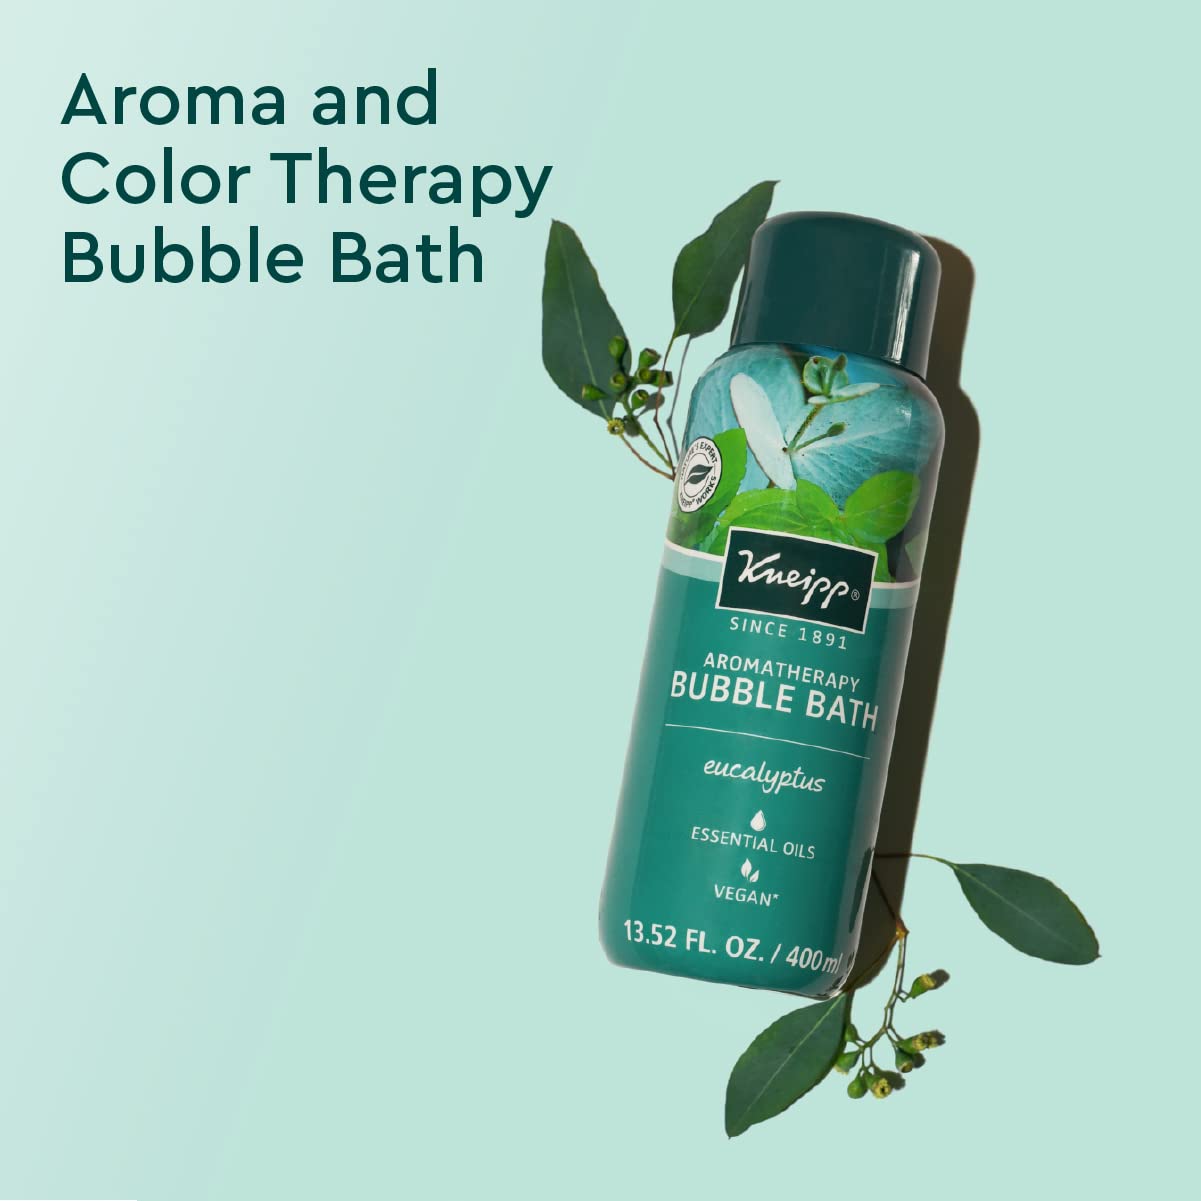 Kneipp Eucalyptus Bubble Bath, 13.52 fl oz, with Aromatherapy